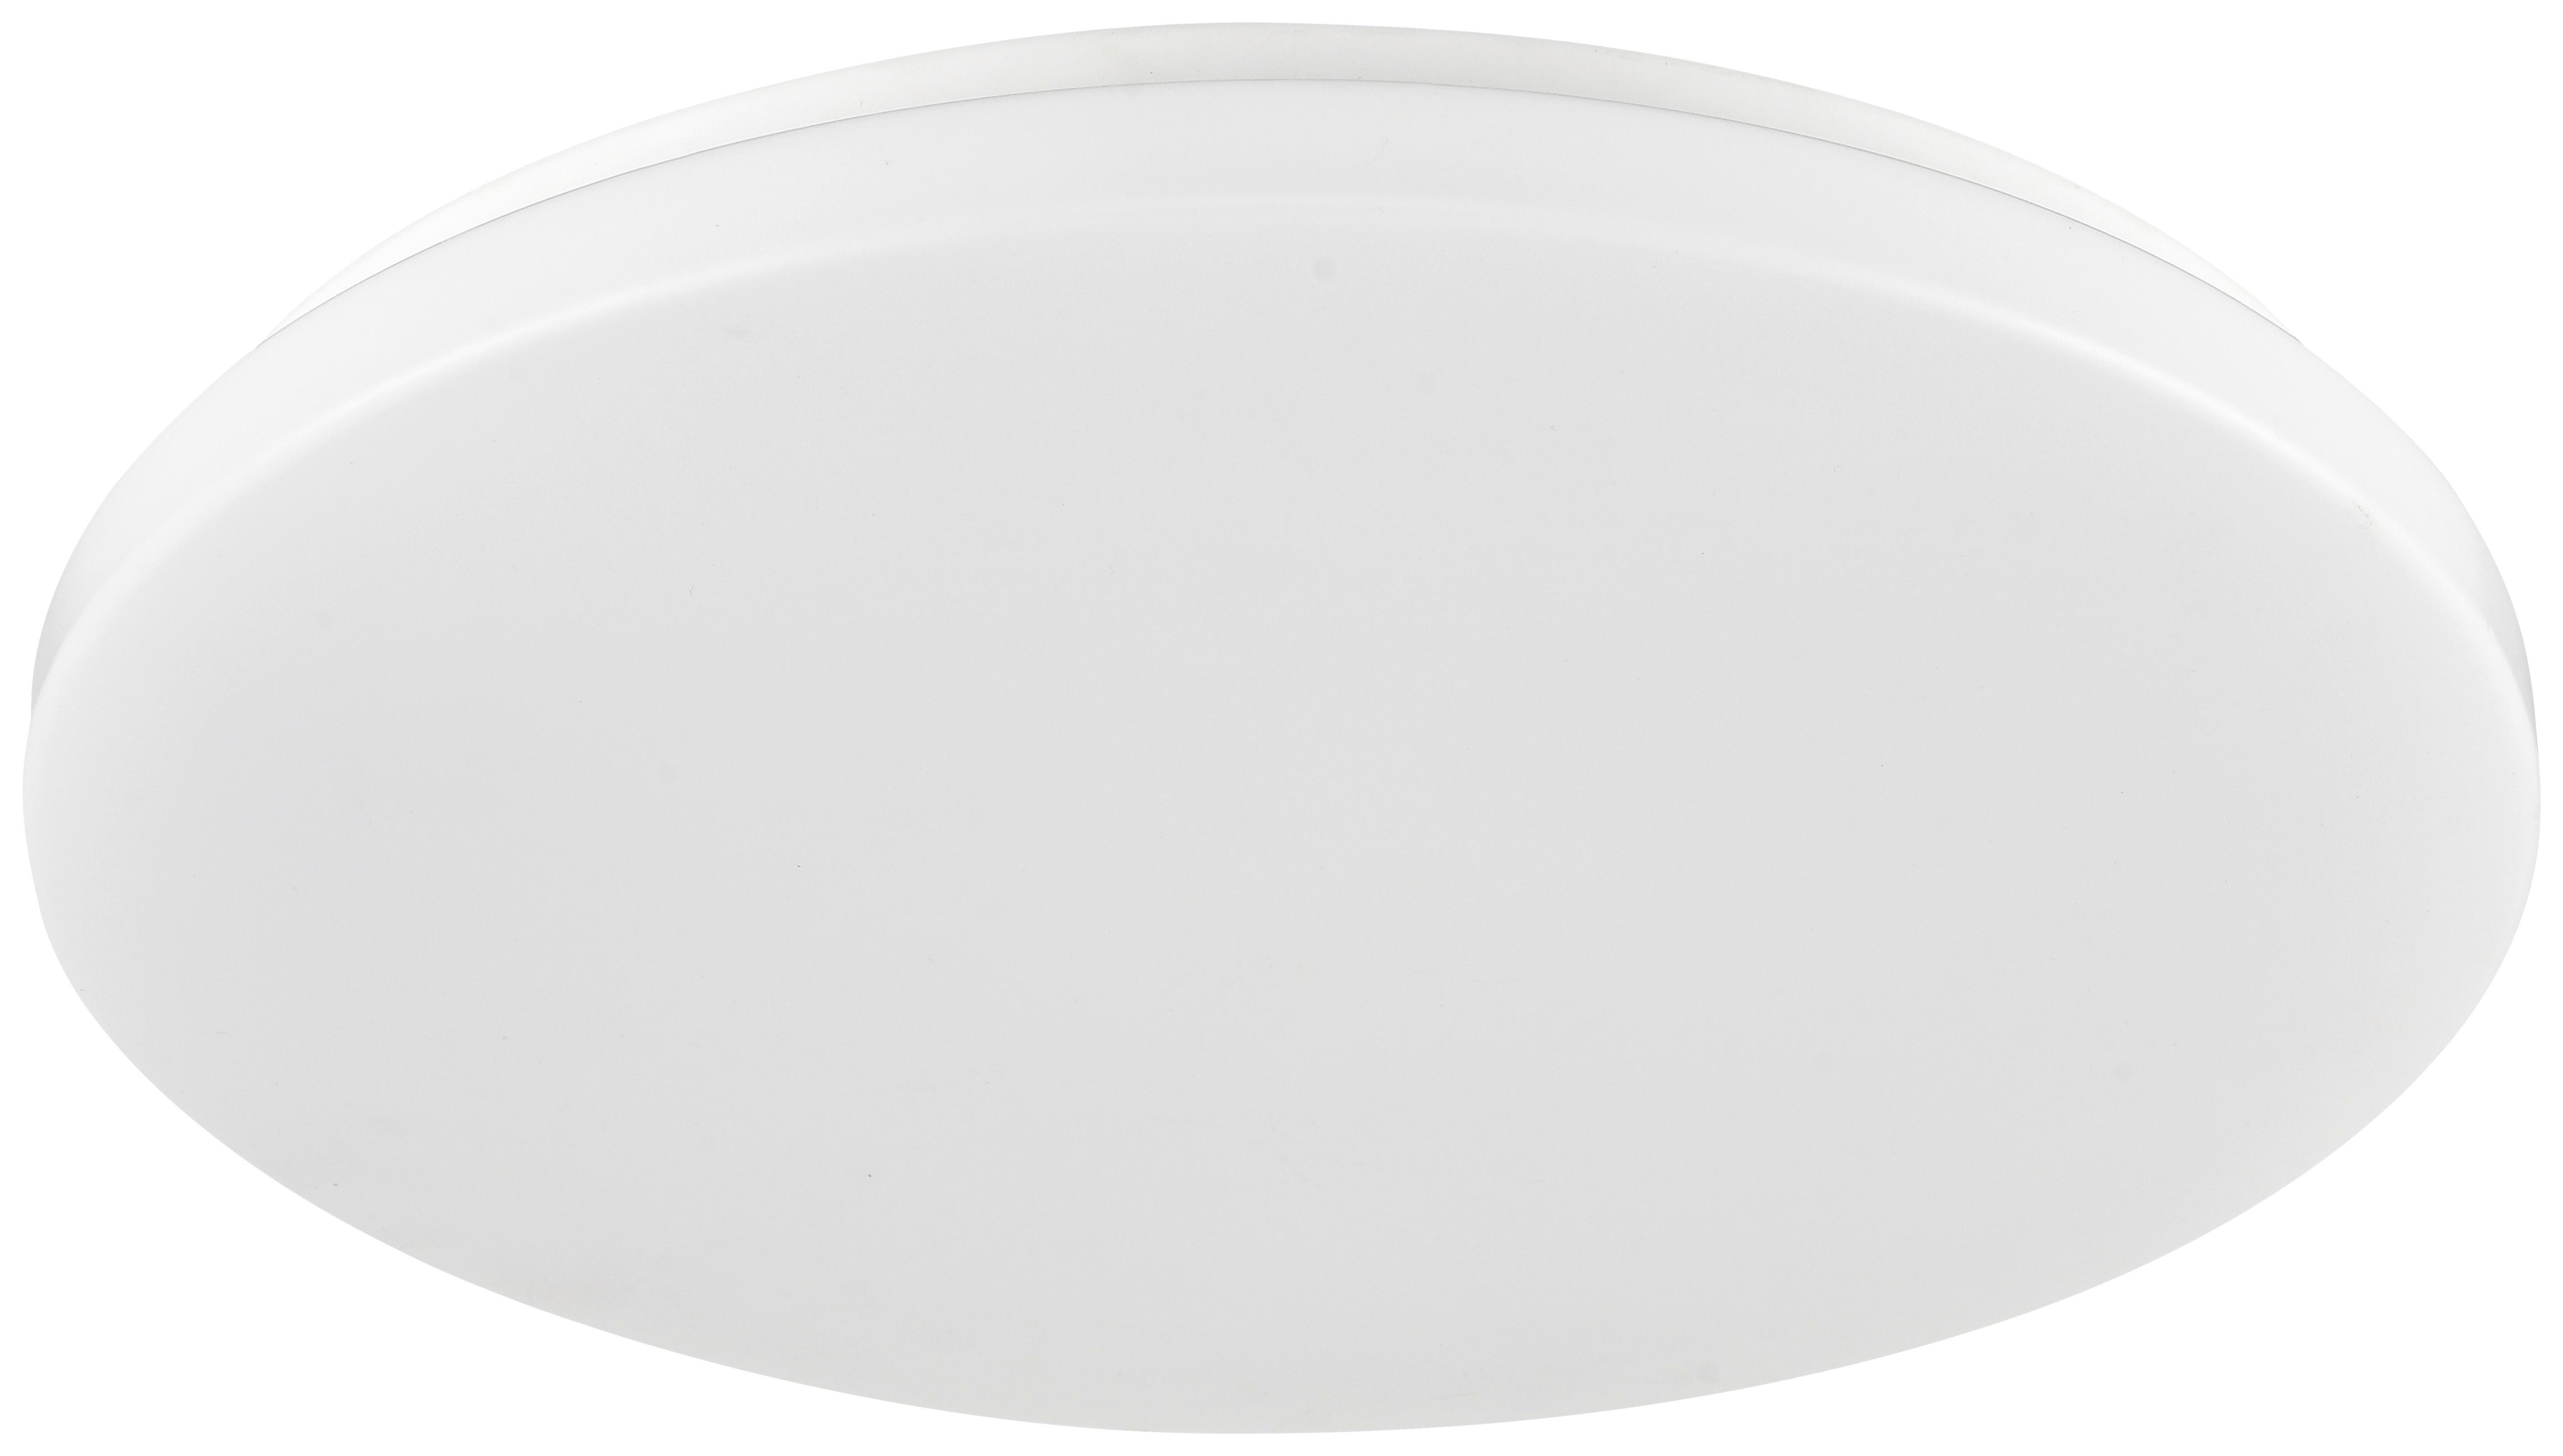 Mennyezeti Lámpa Woter 29cm - Fehér, konvencionális, Műanyag/Fém (29/6,5cm) - Modern Living